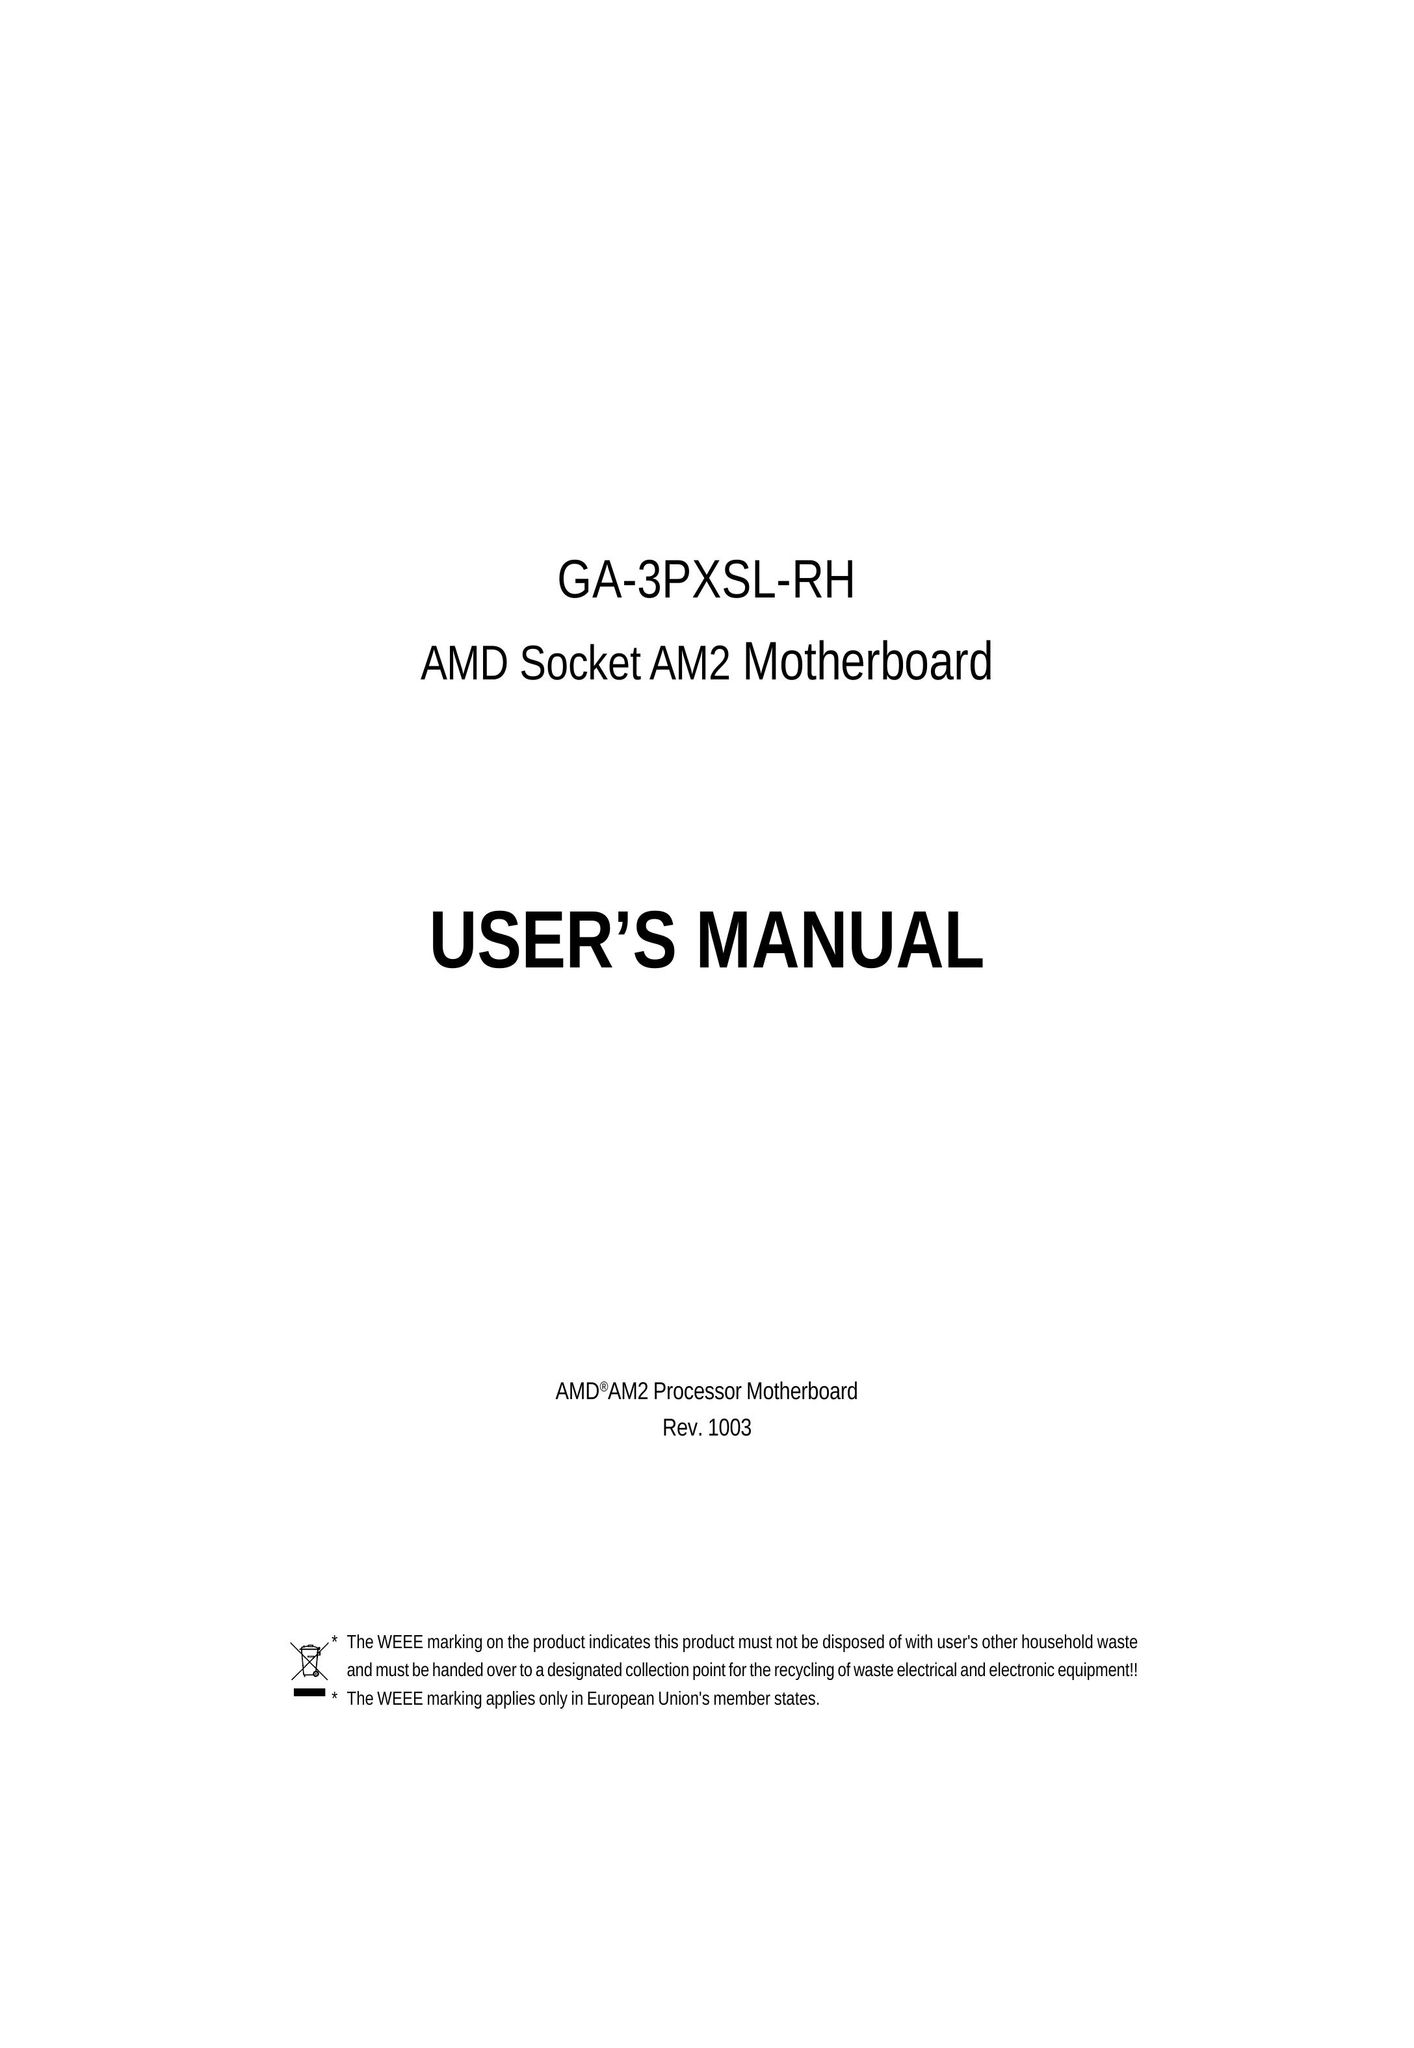 Gigabyte GA-3PXSL-RH Network Card User Manual